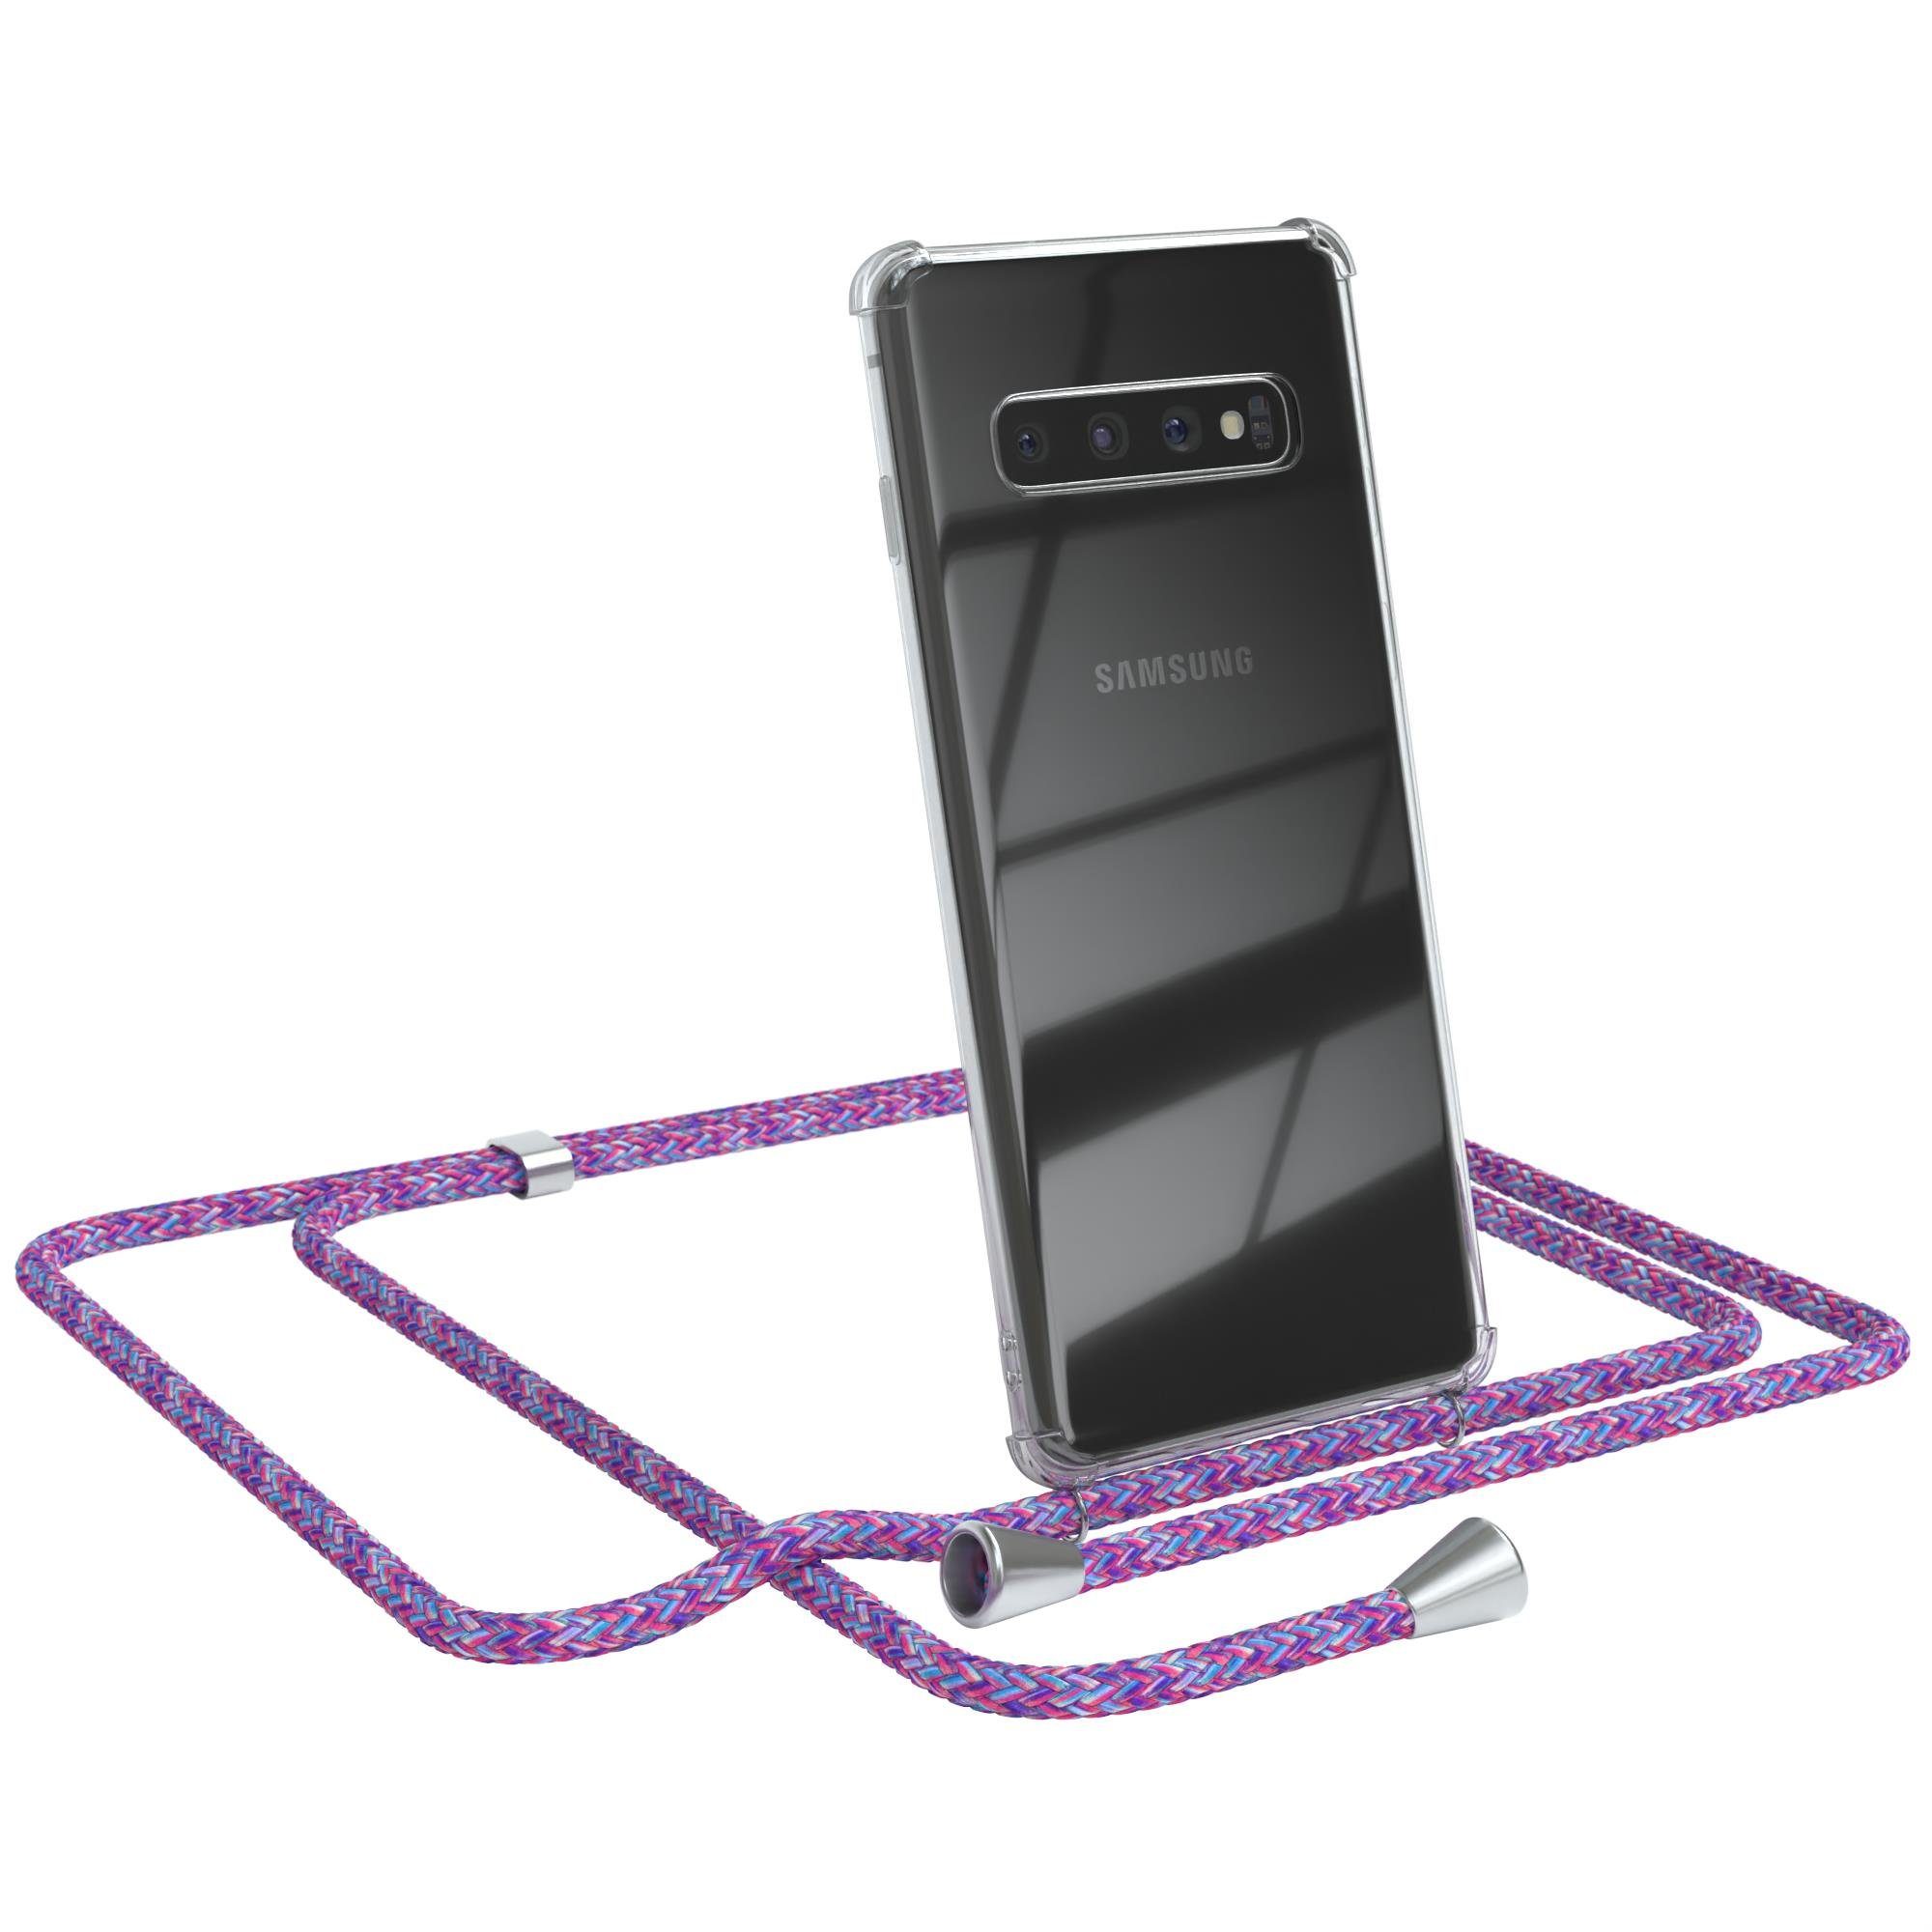 EAZY CASE Handykette Hülle mit Kette für Samsung Galaxy S10 6,1 Zoll, Umhängetasche für Handy Silikonhülle Handyhülle durchsichtig Violett